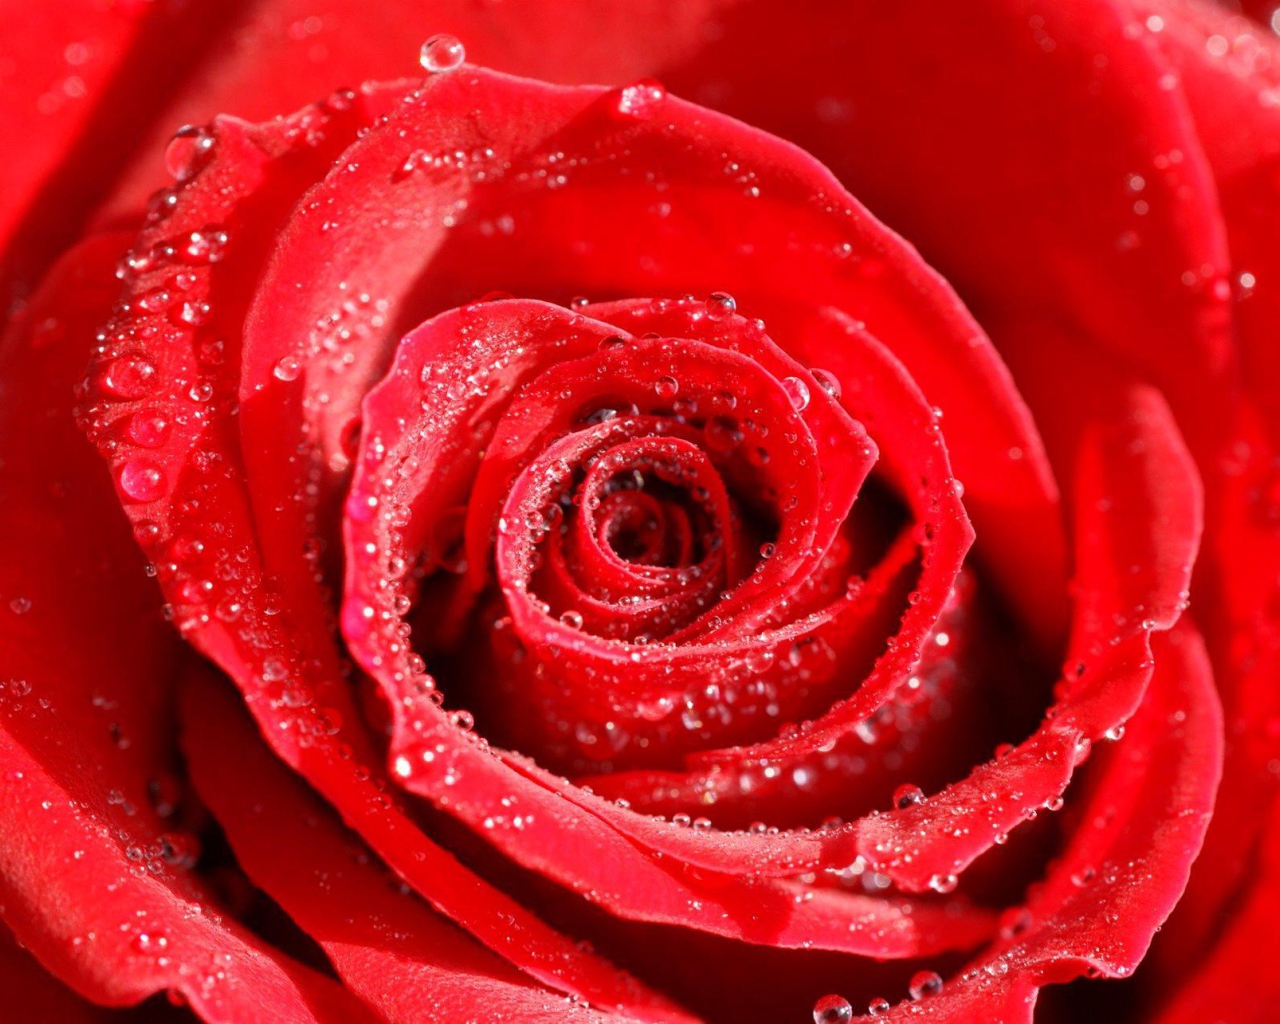 Роса на розе в День Святого Валентина